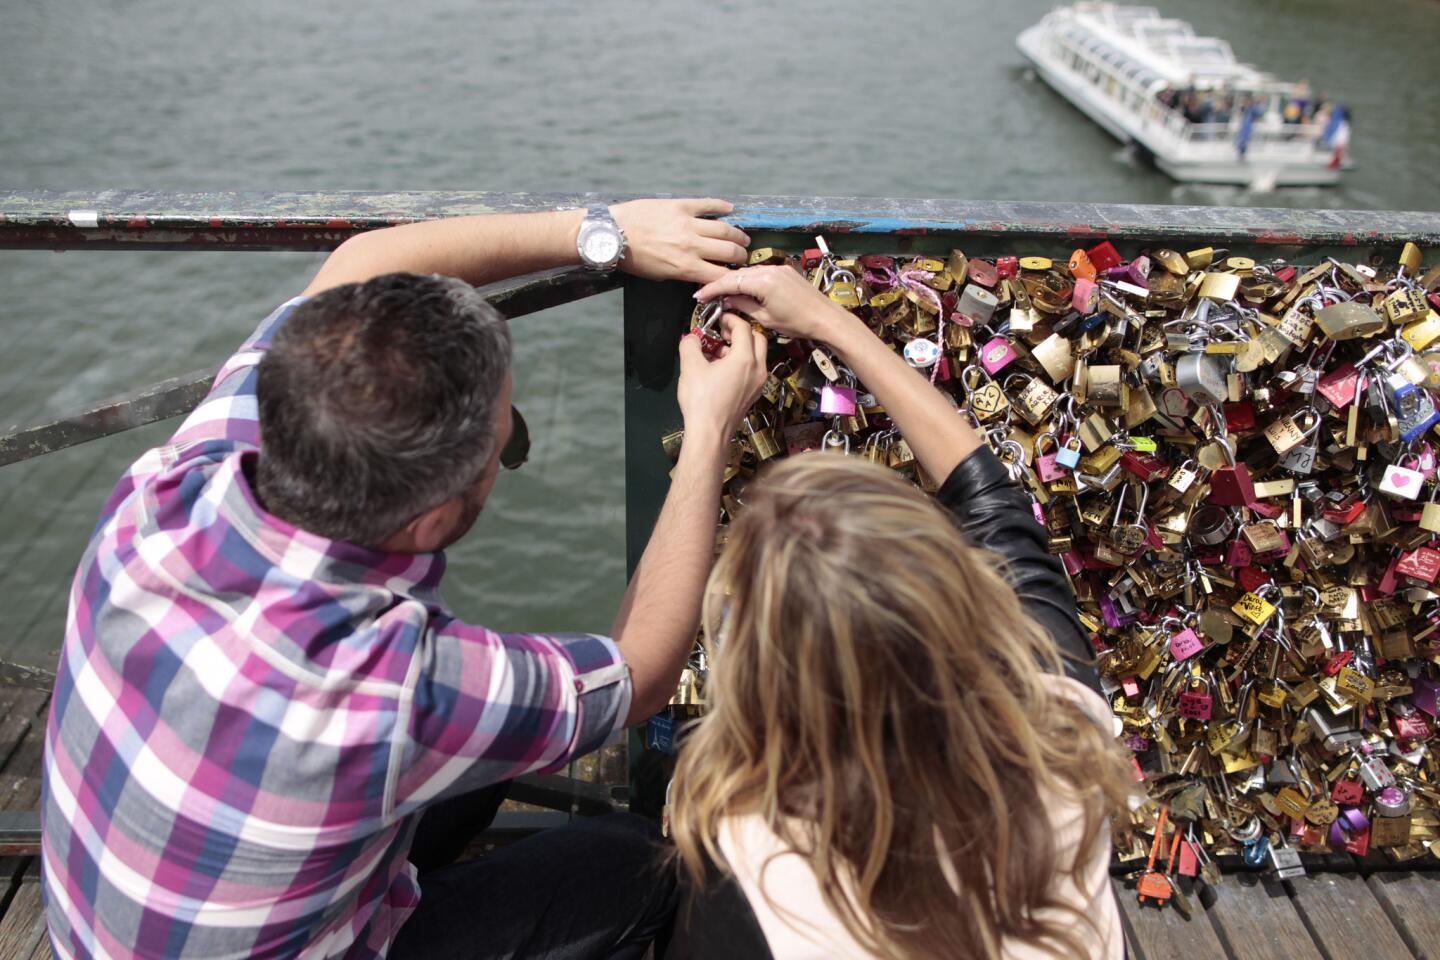 Paris love locks